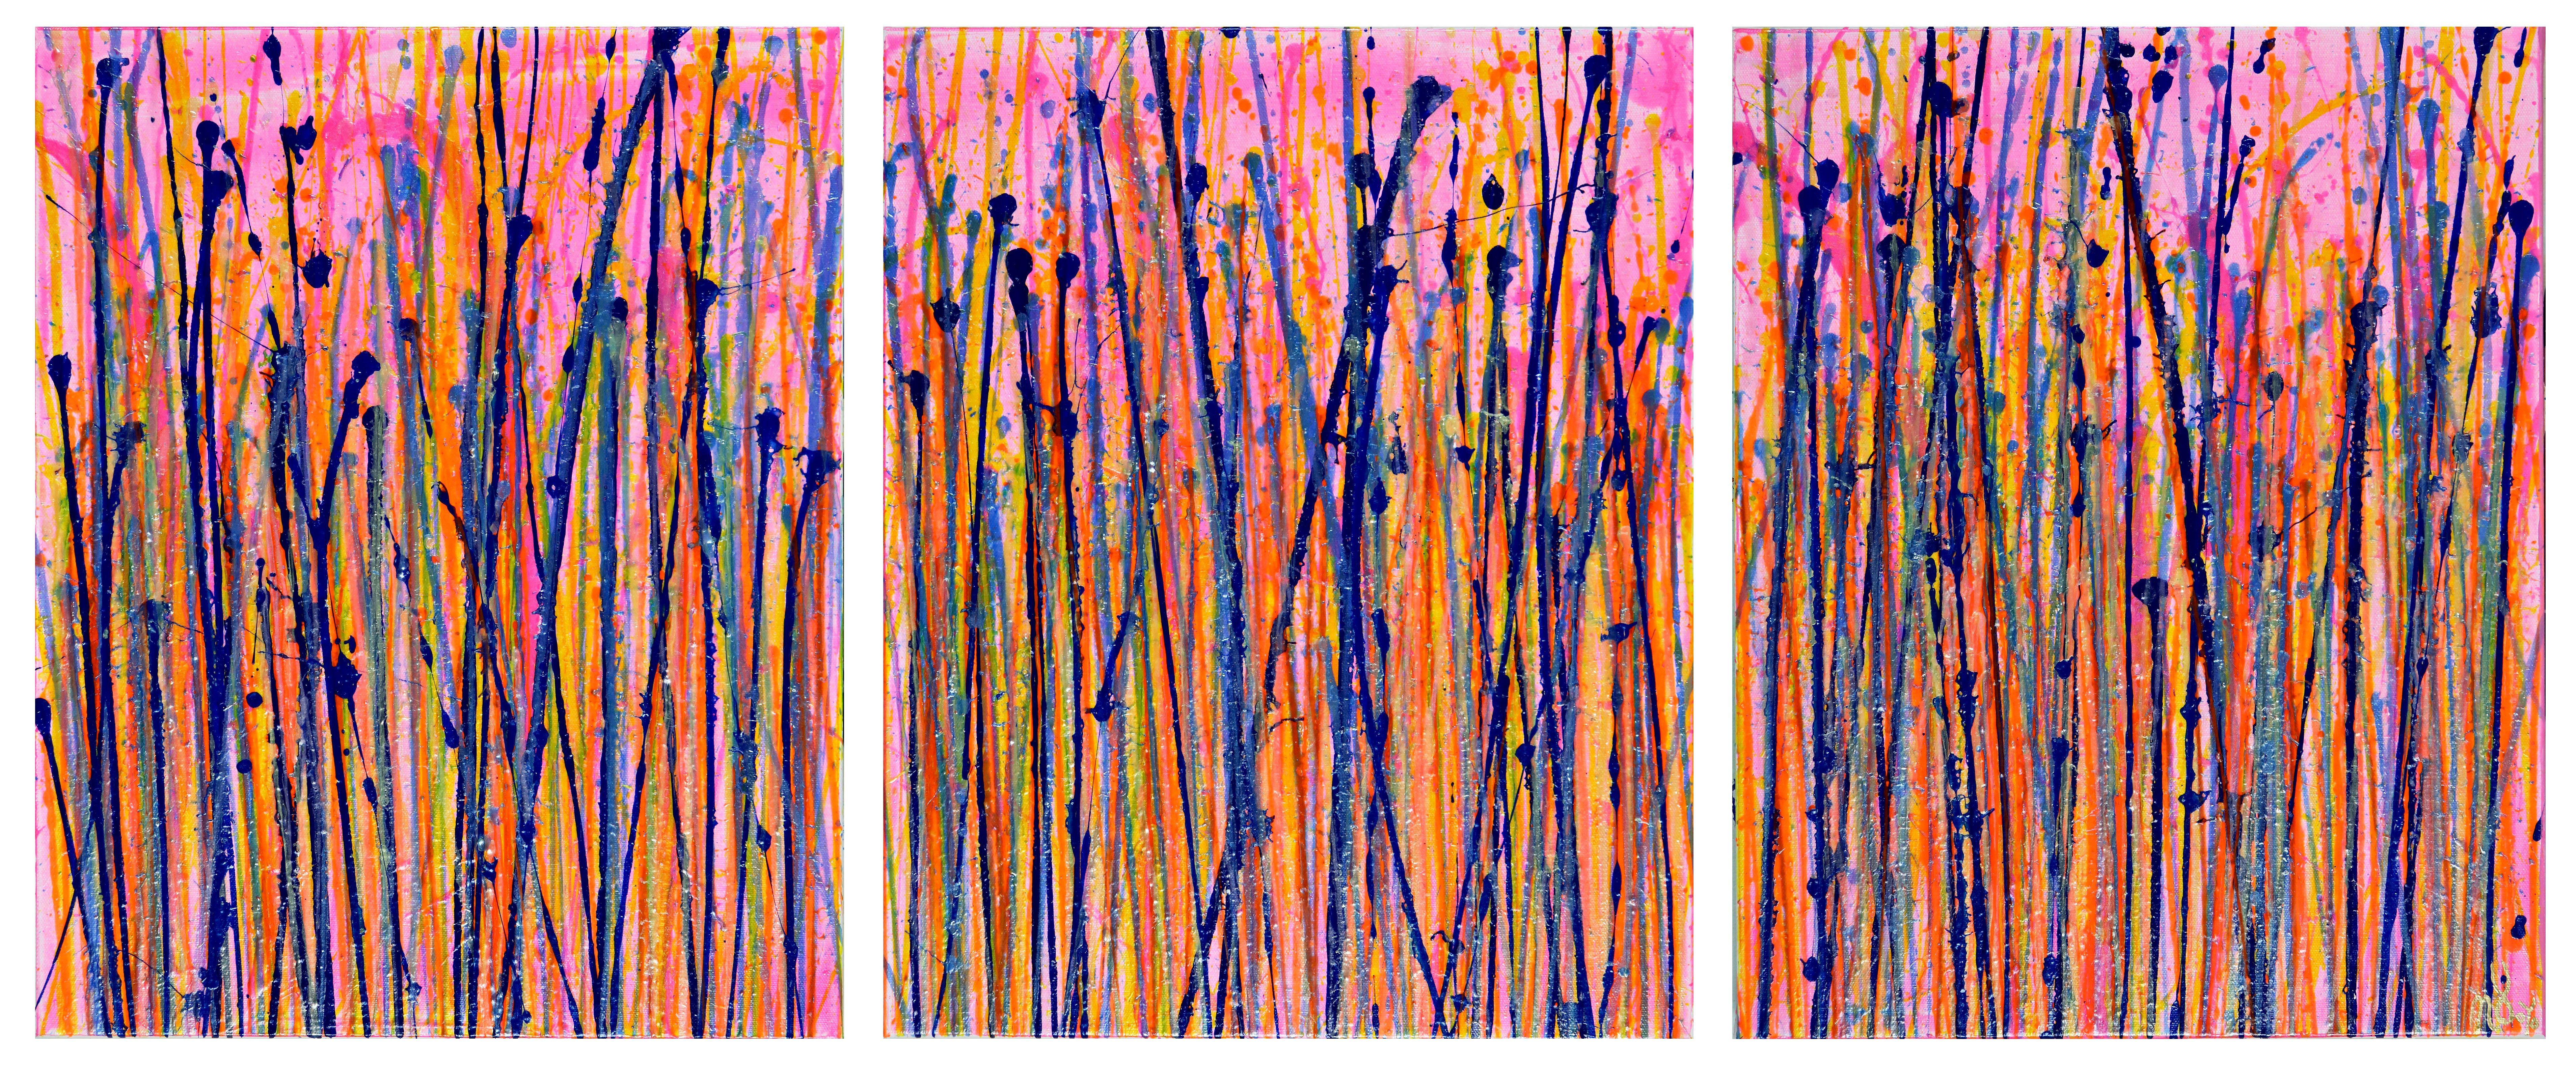 Drei Leinwände mit tiefem Rand (Galerieprofil), jeweils 16 B x 20 H x 1,5 Zoll. Hängefertig.    Ausdrucksstarke moderne abstrakte, mutige voller Leben, Glanz und Schimmer! inspiriert von der Natur, viele durchscheinende Farben kombiniert mit